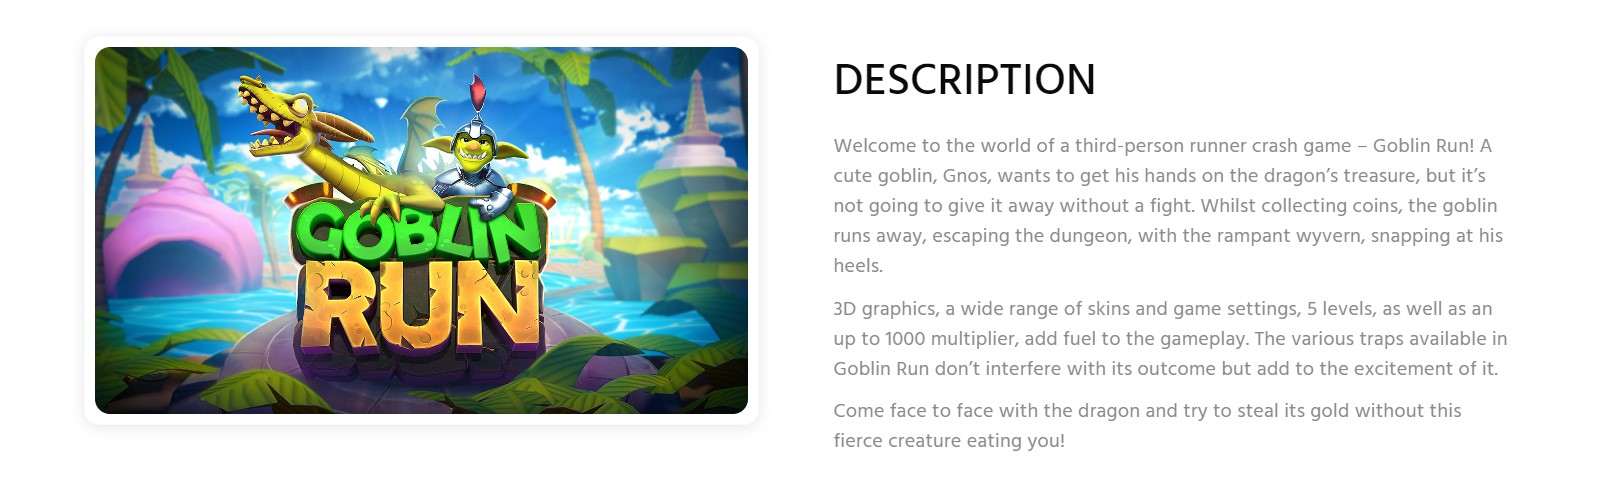 Goblin Run game description